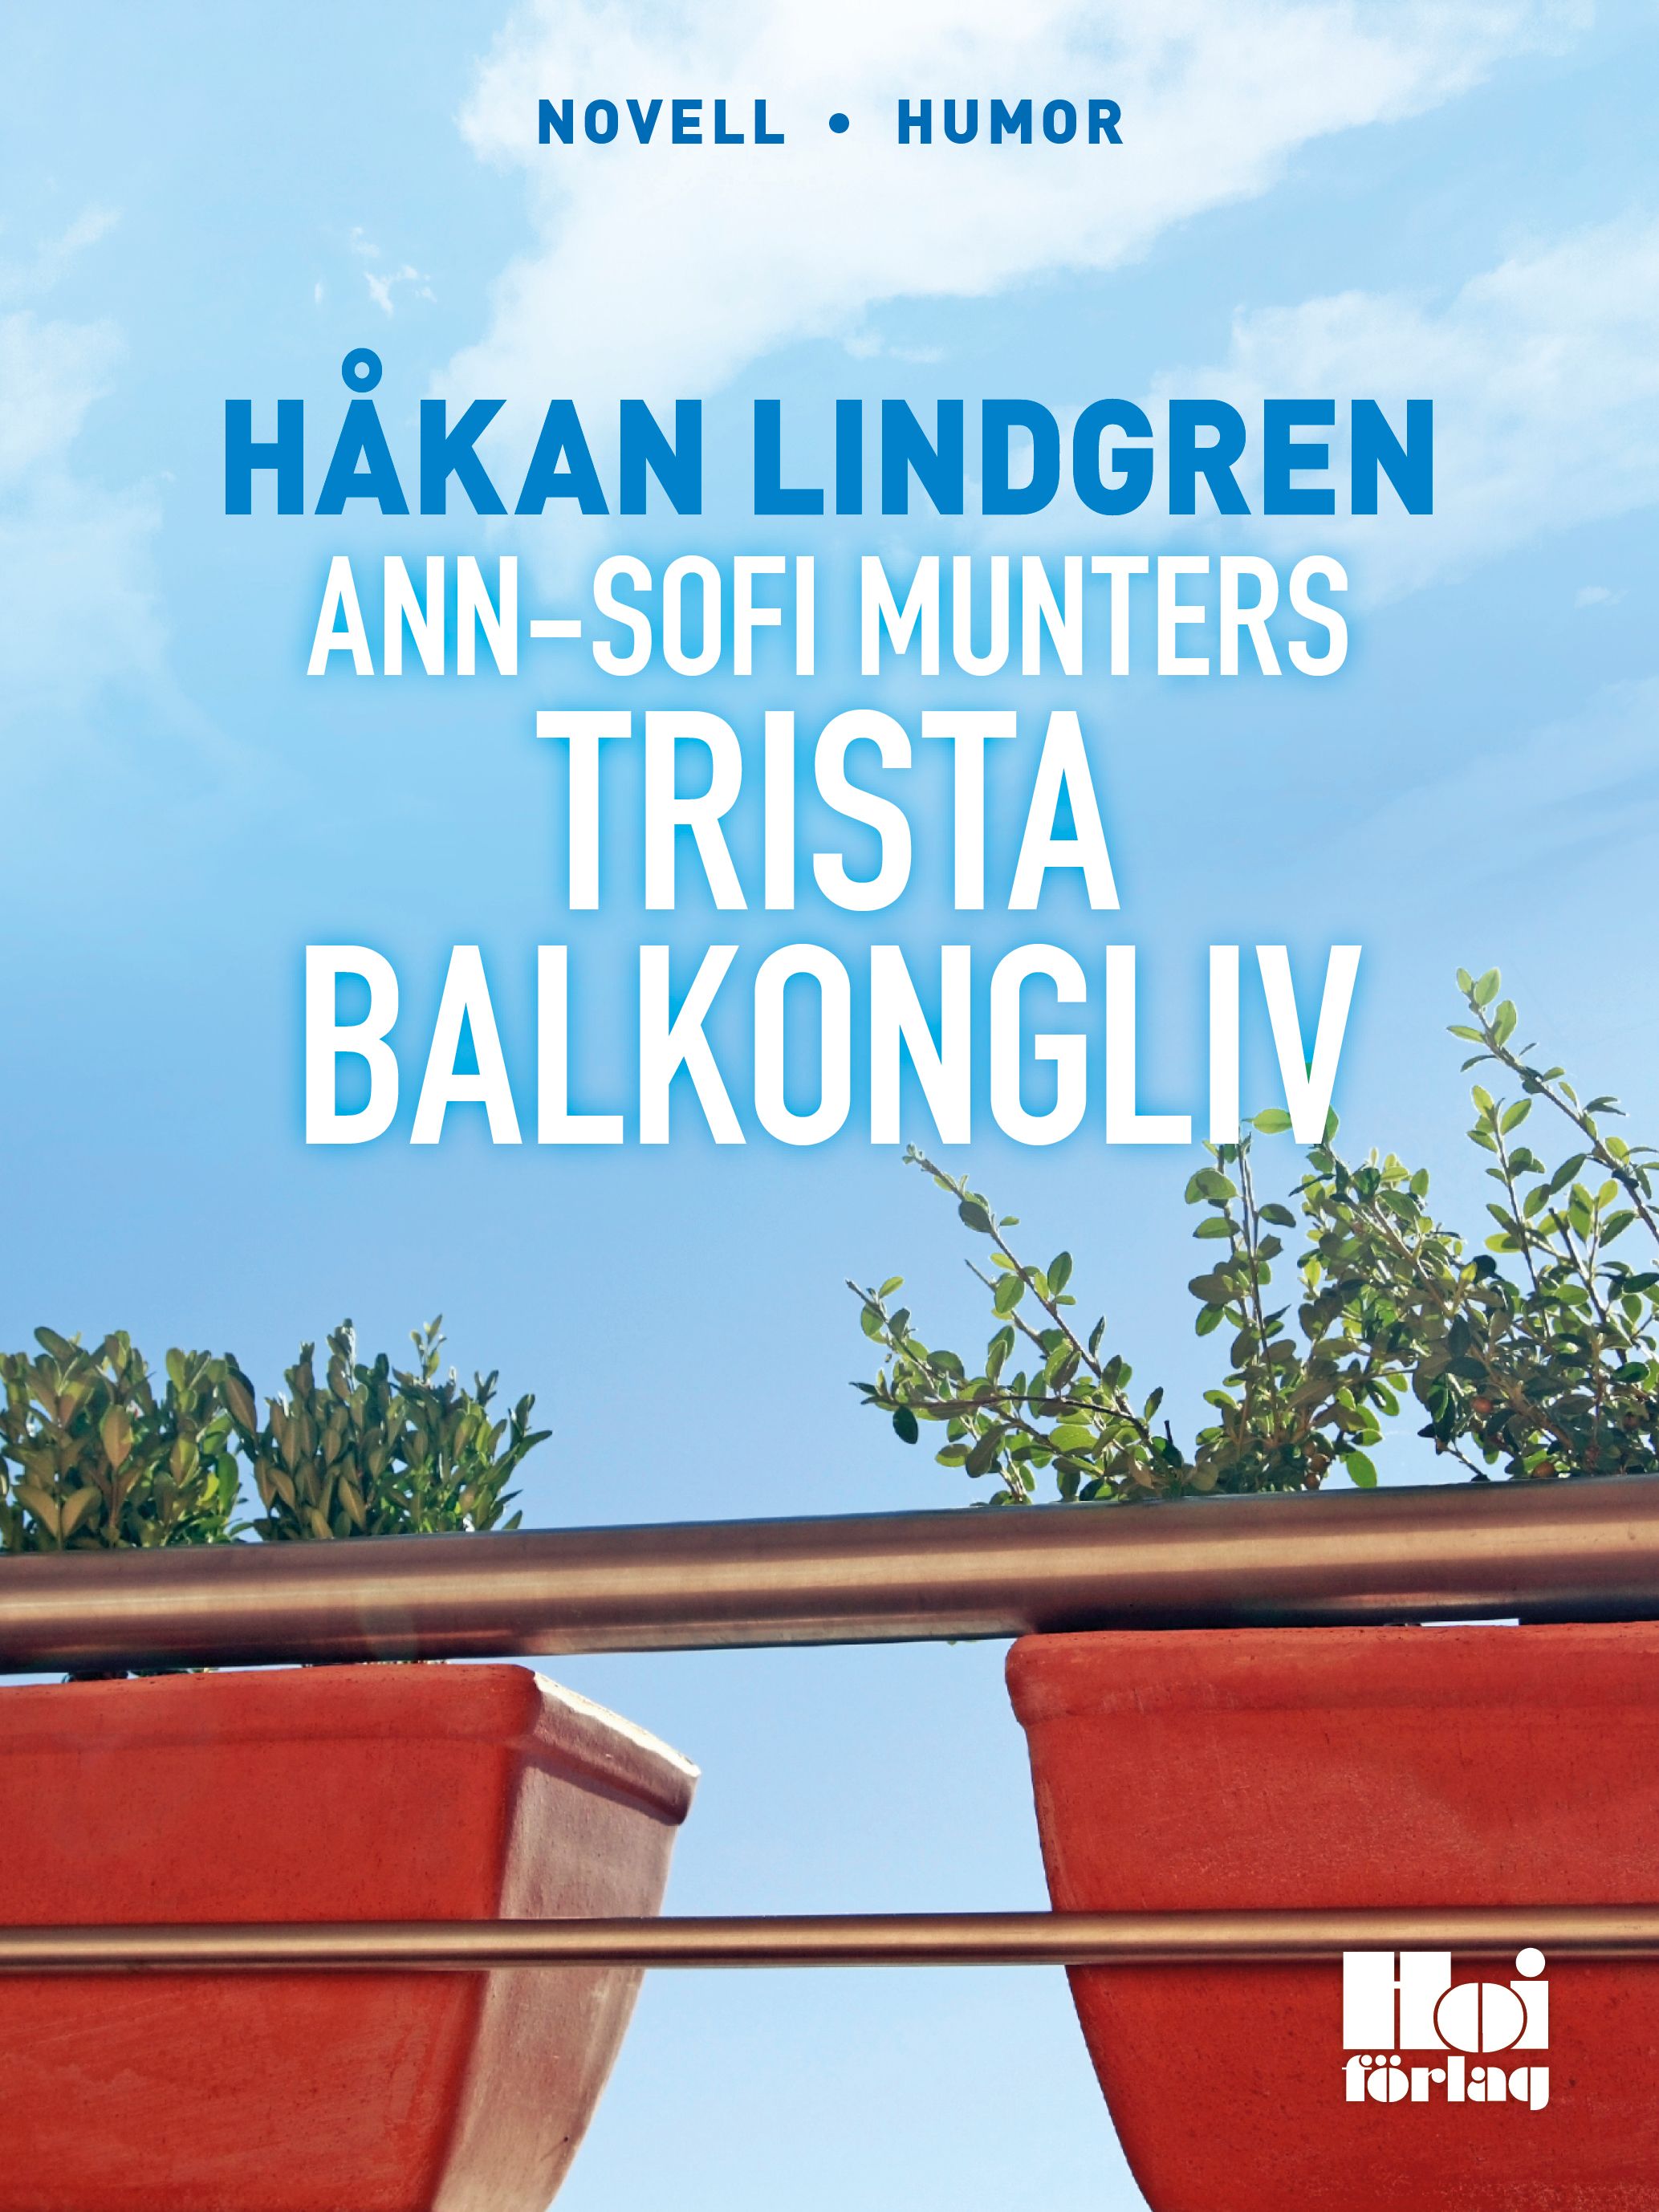 Ann-Sofi Munters trista balkongliv, eBook by Håkan Lindgren